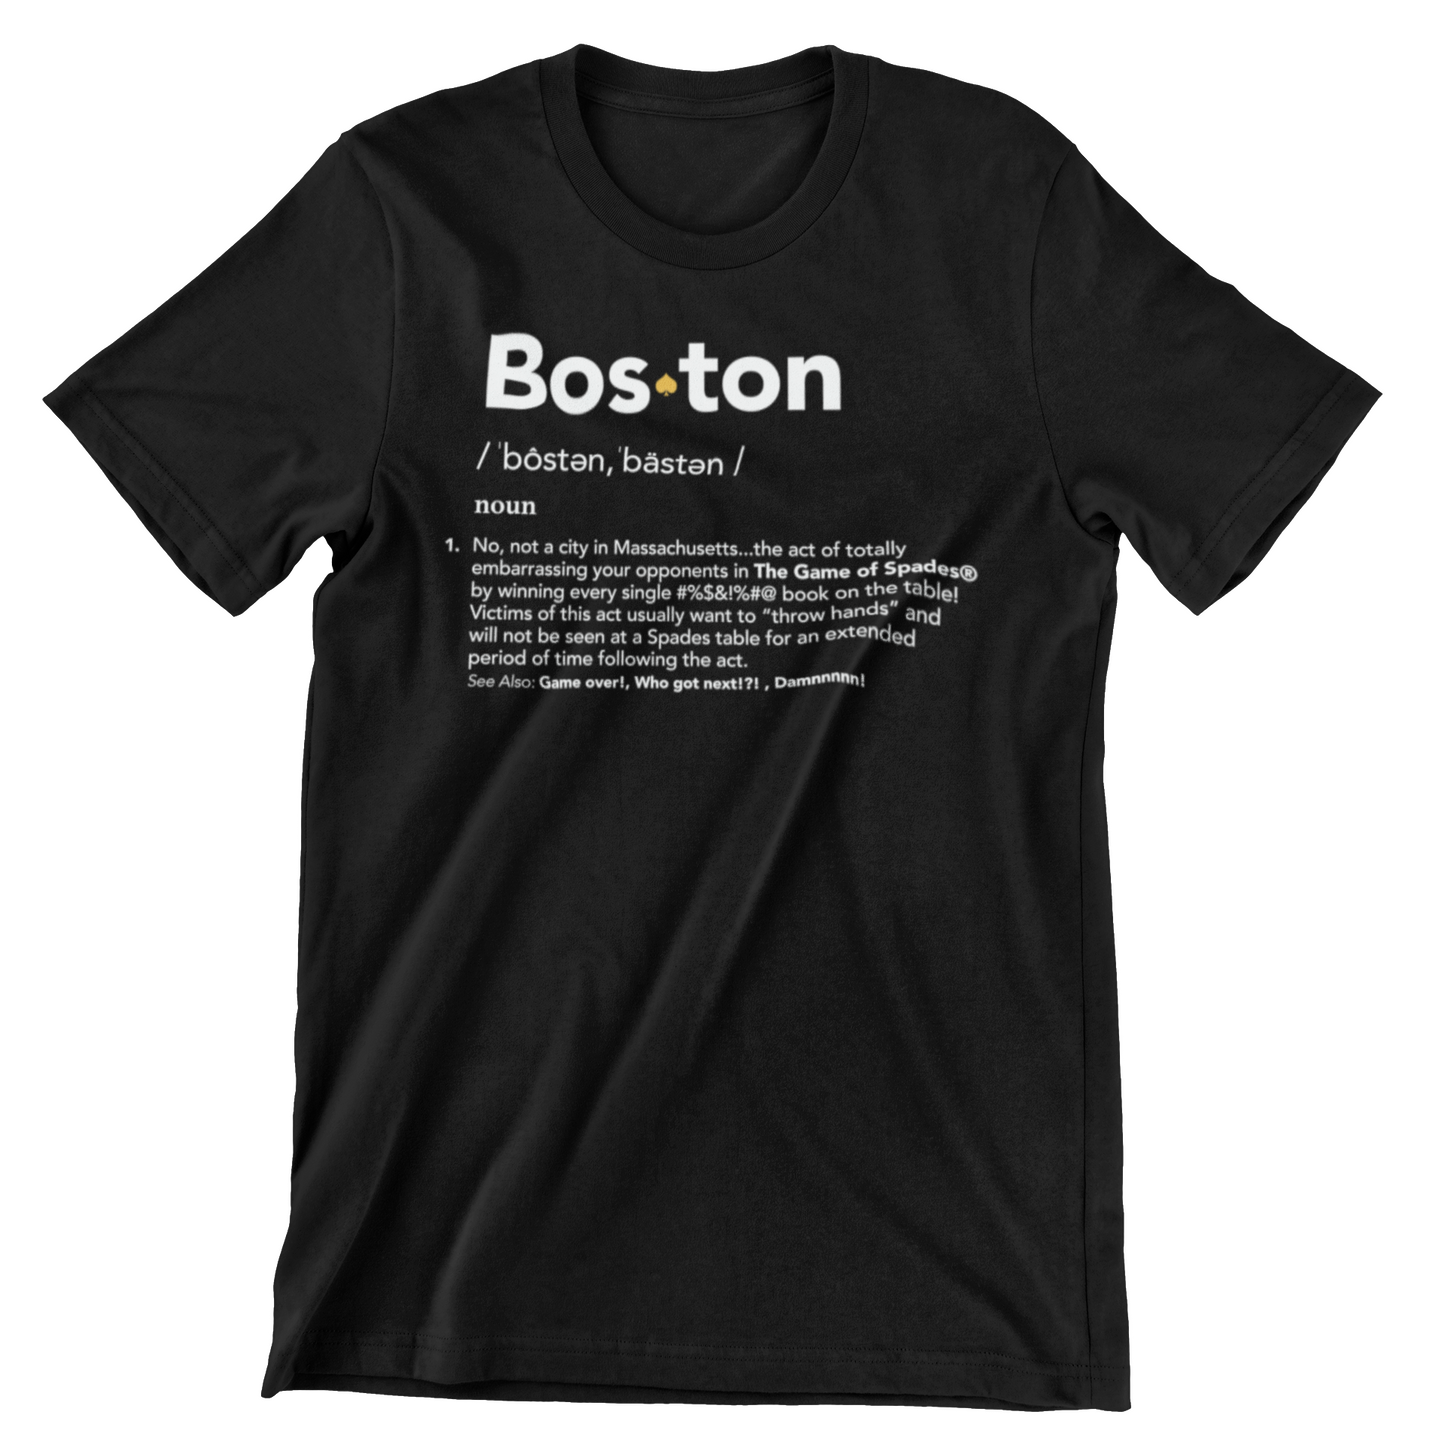 "bosten" t-shirt